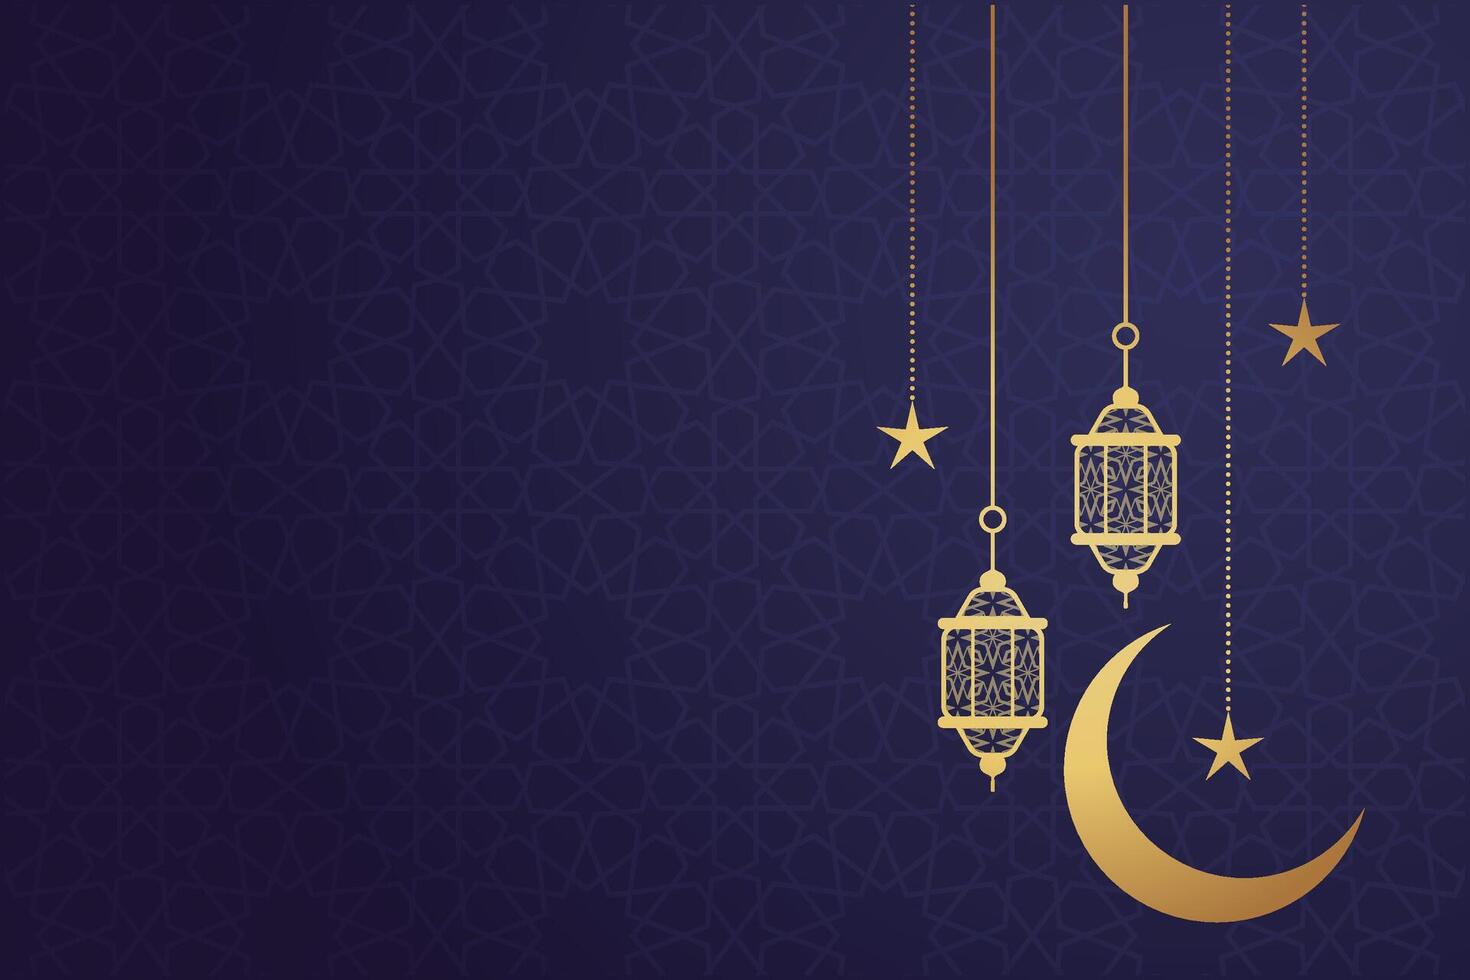 Ramadan, eid al-fitr, islamico nuovo anno sfondo saluto carta vettore